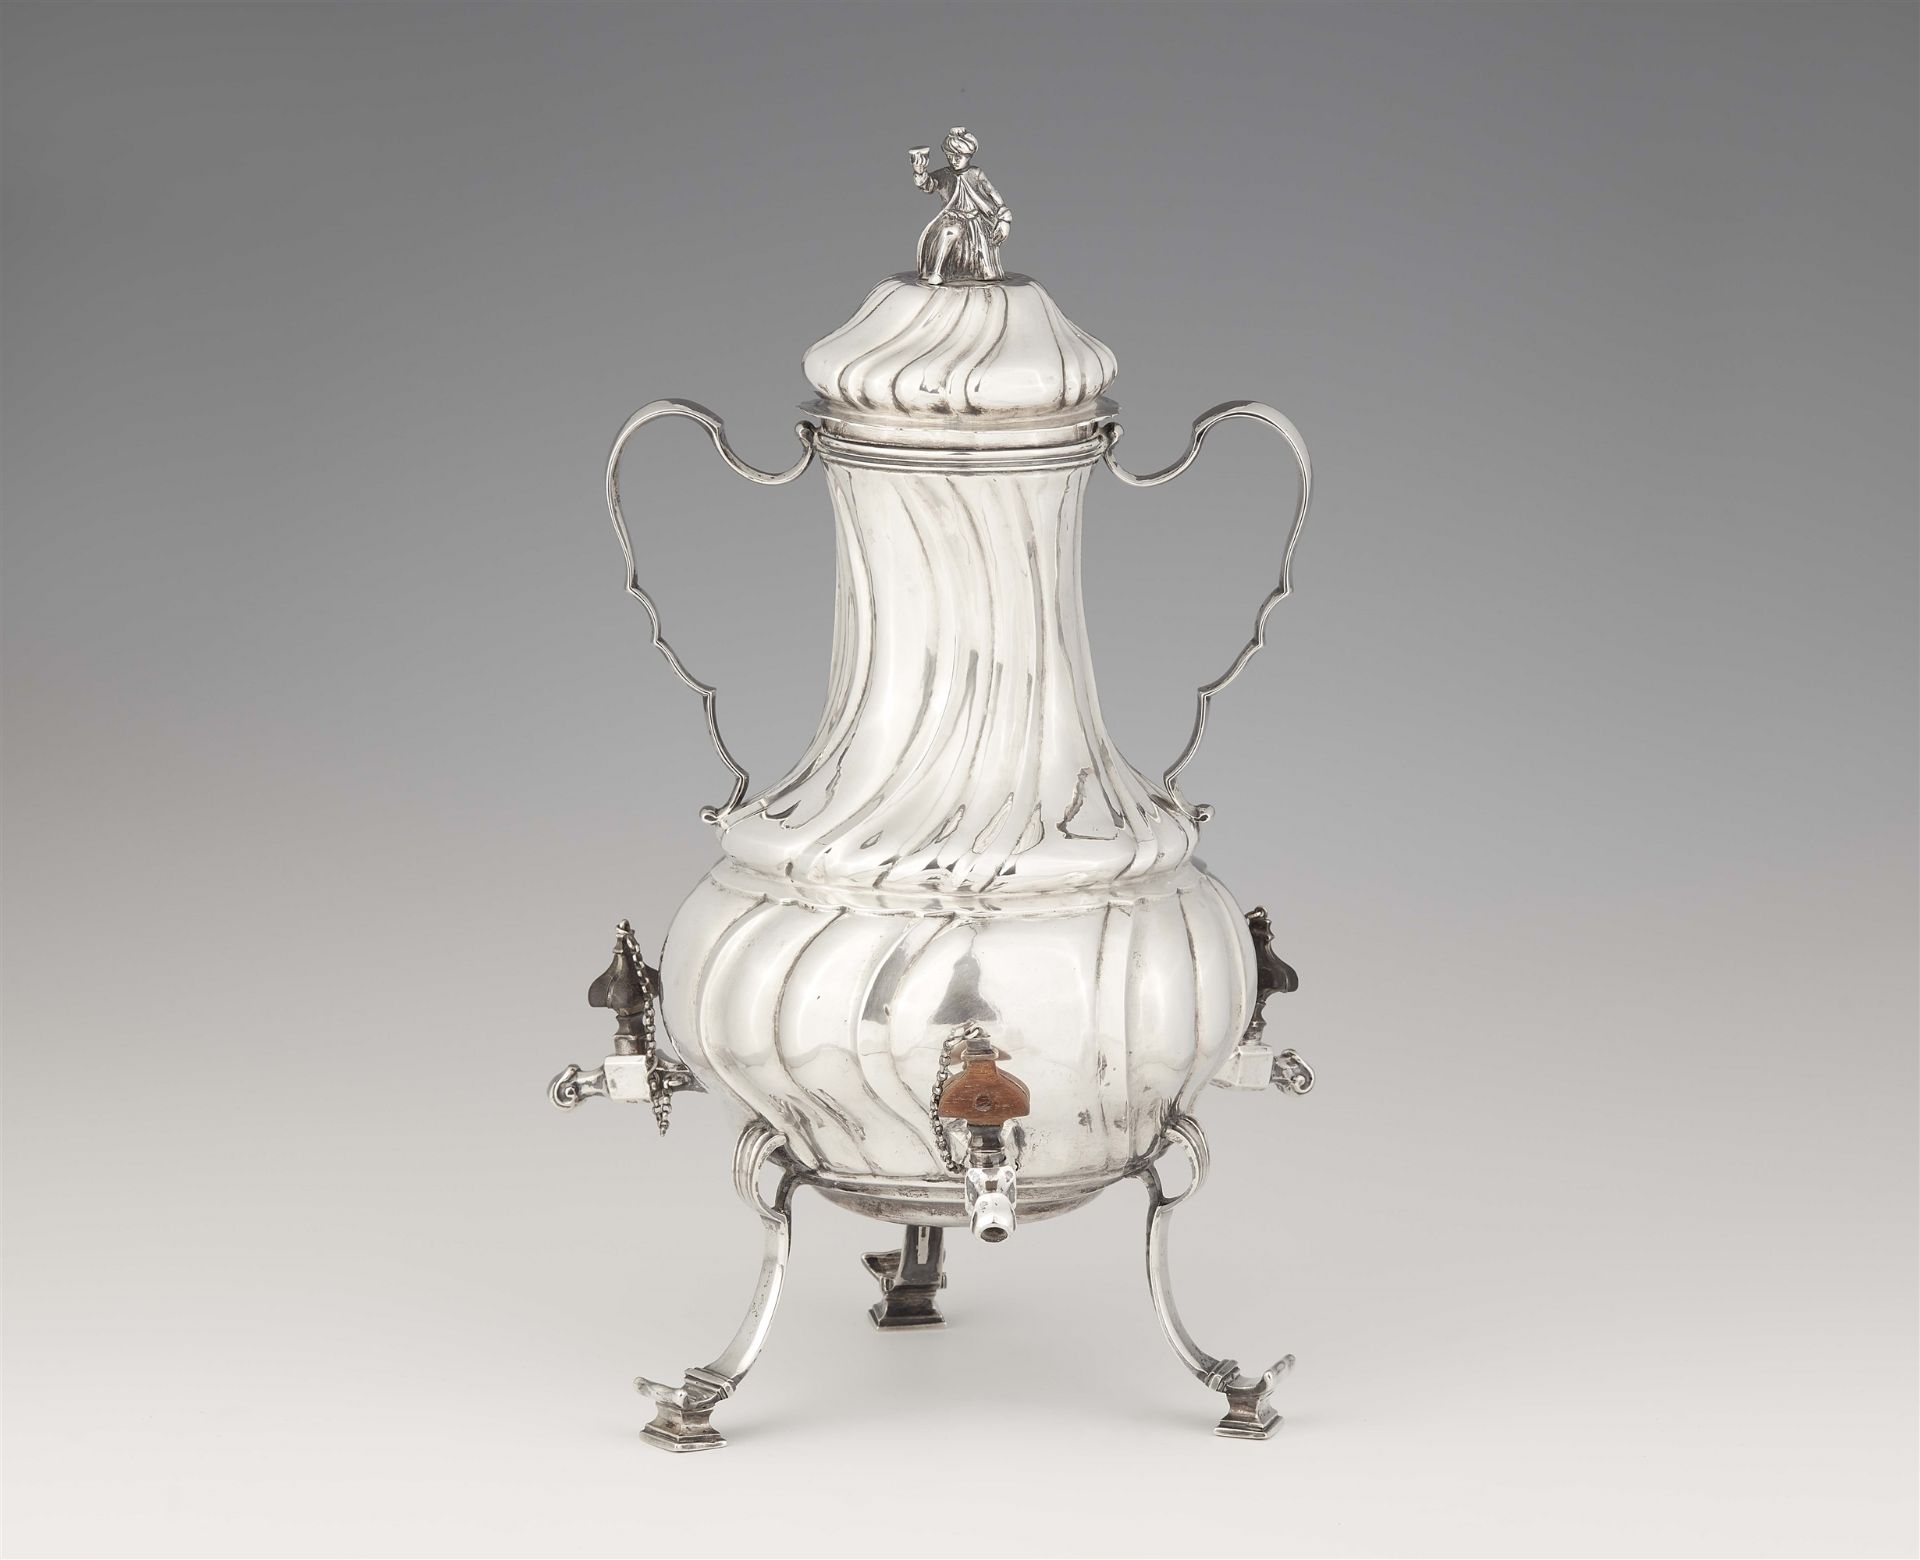 An Augsburg silver tea urn